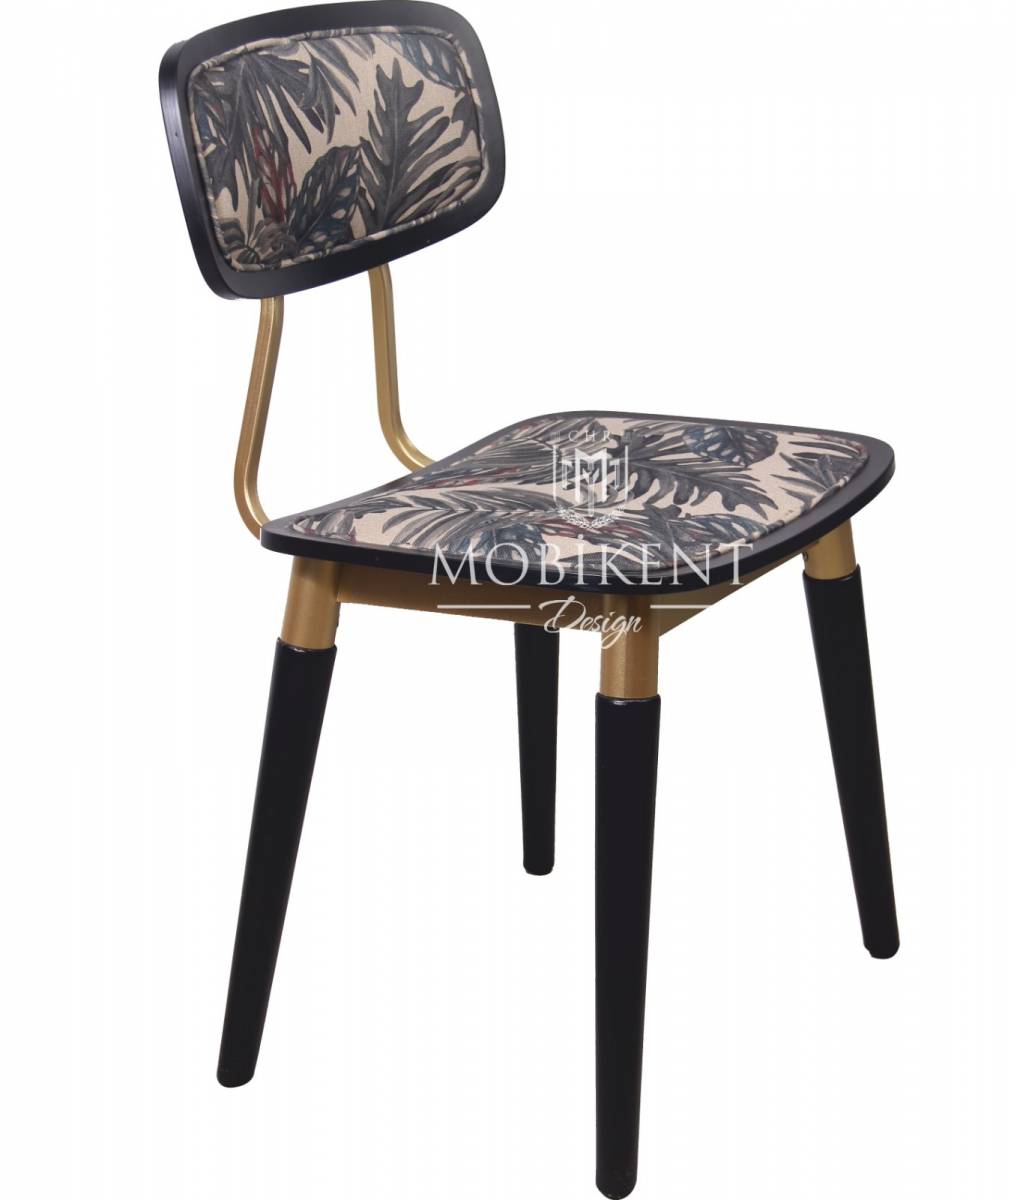 Chaise ossature en acier personnalisable pour restaurant- MobiKent Design